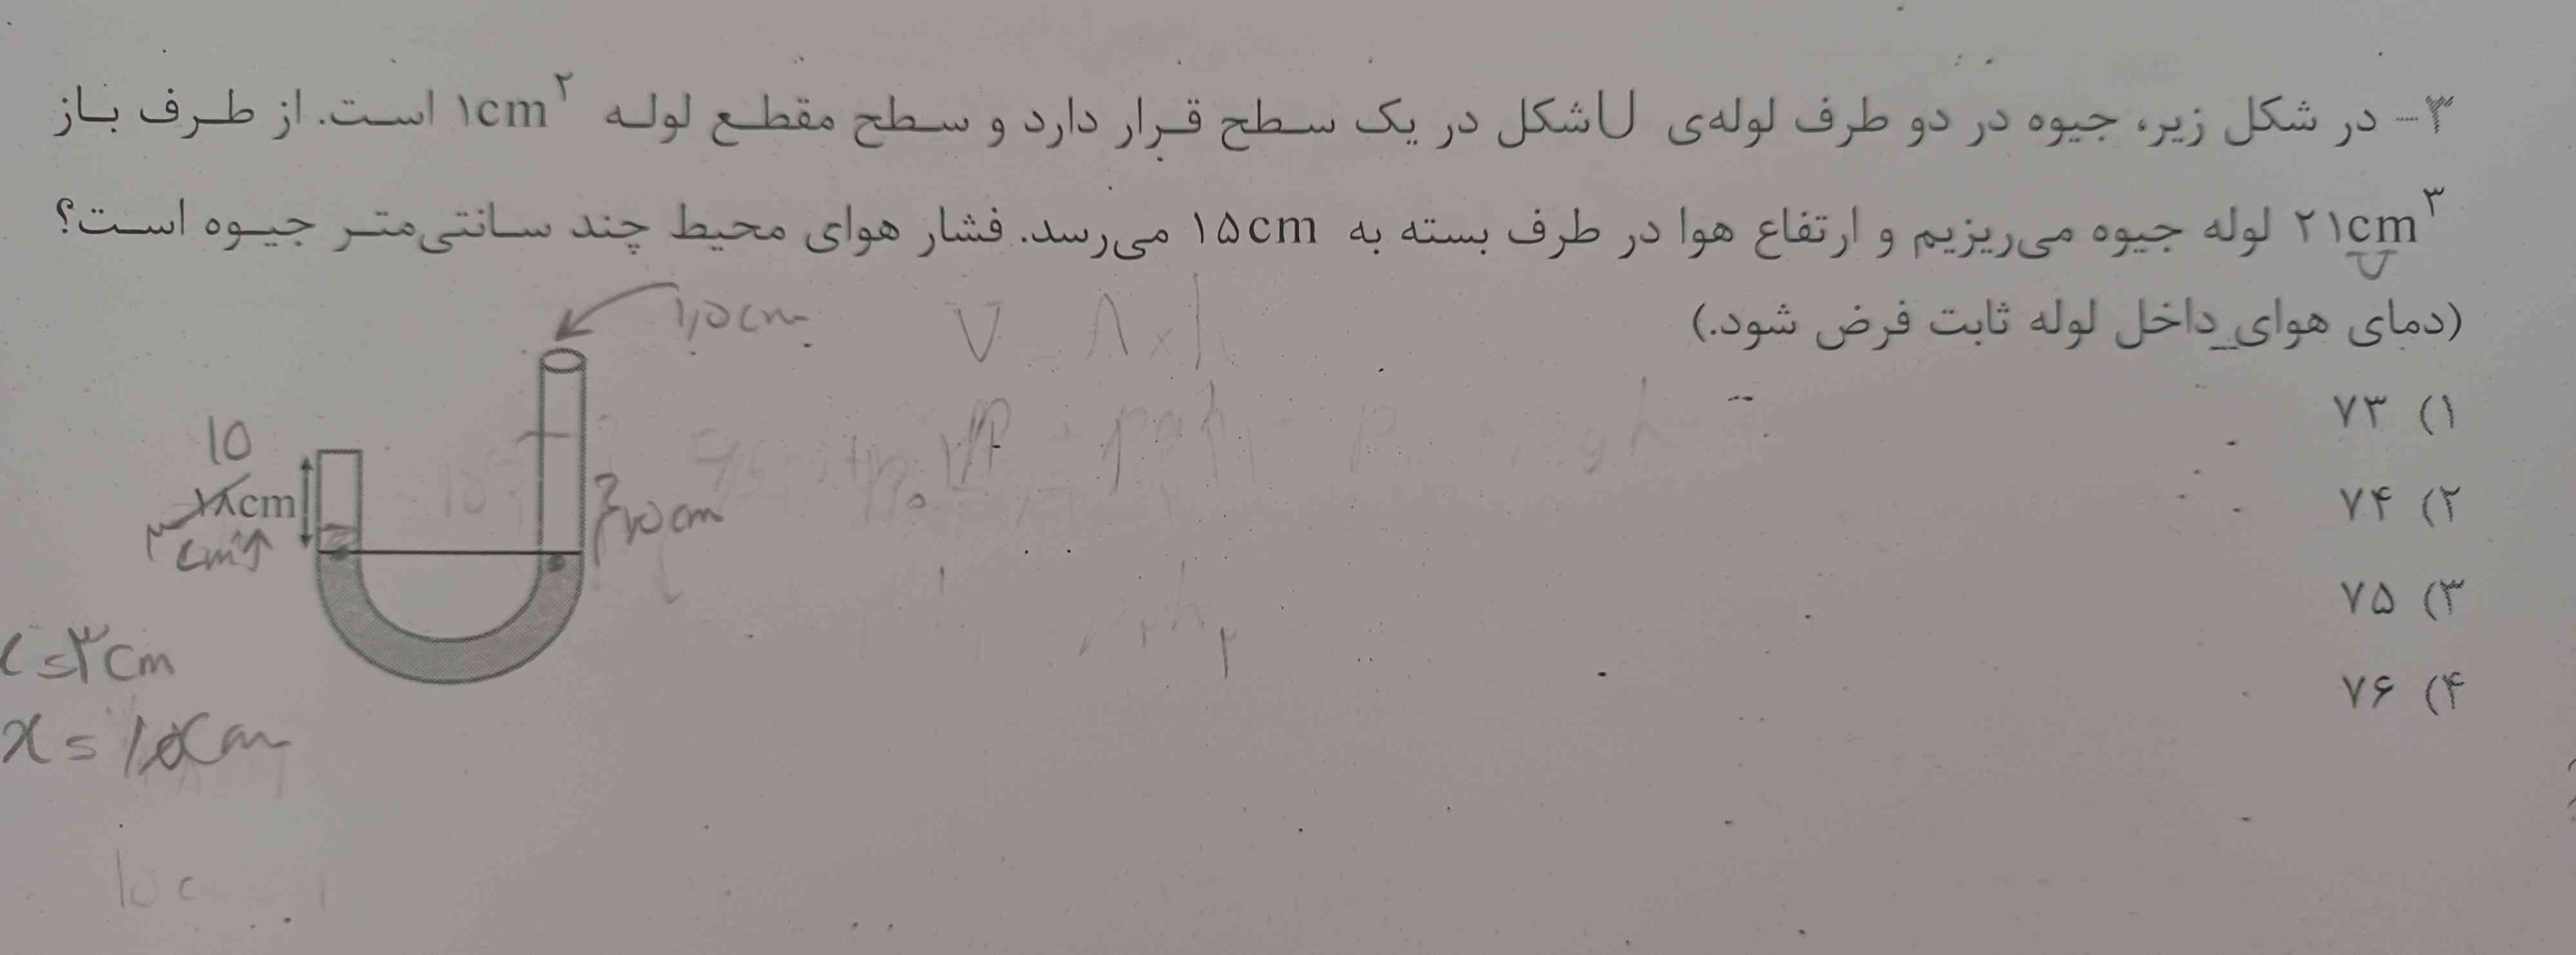 سلام دوستان این سوال مربوط به فیزیک دهم رشته ریاضی هست میدونین چطوریه؟؟؟☹️